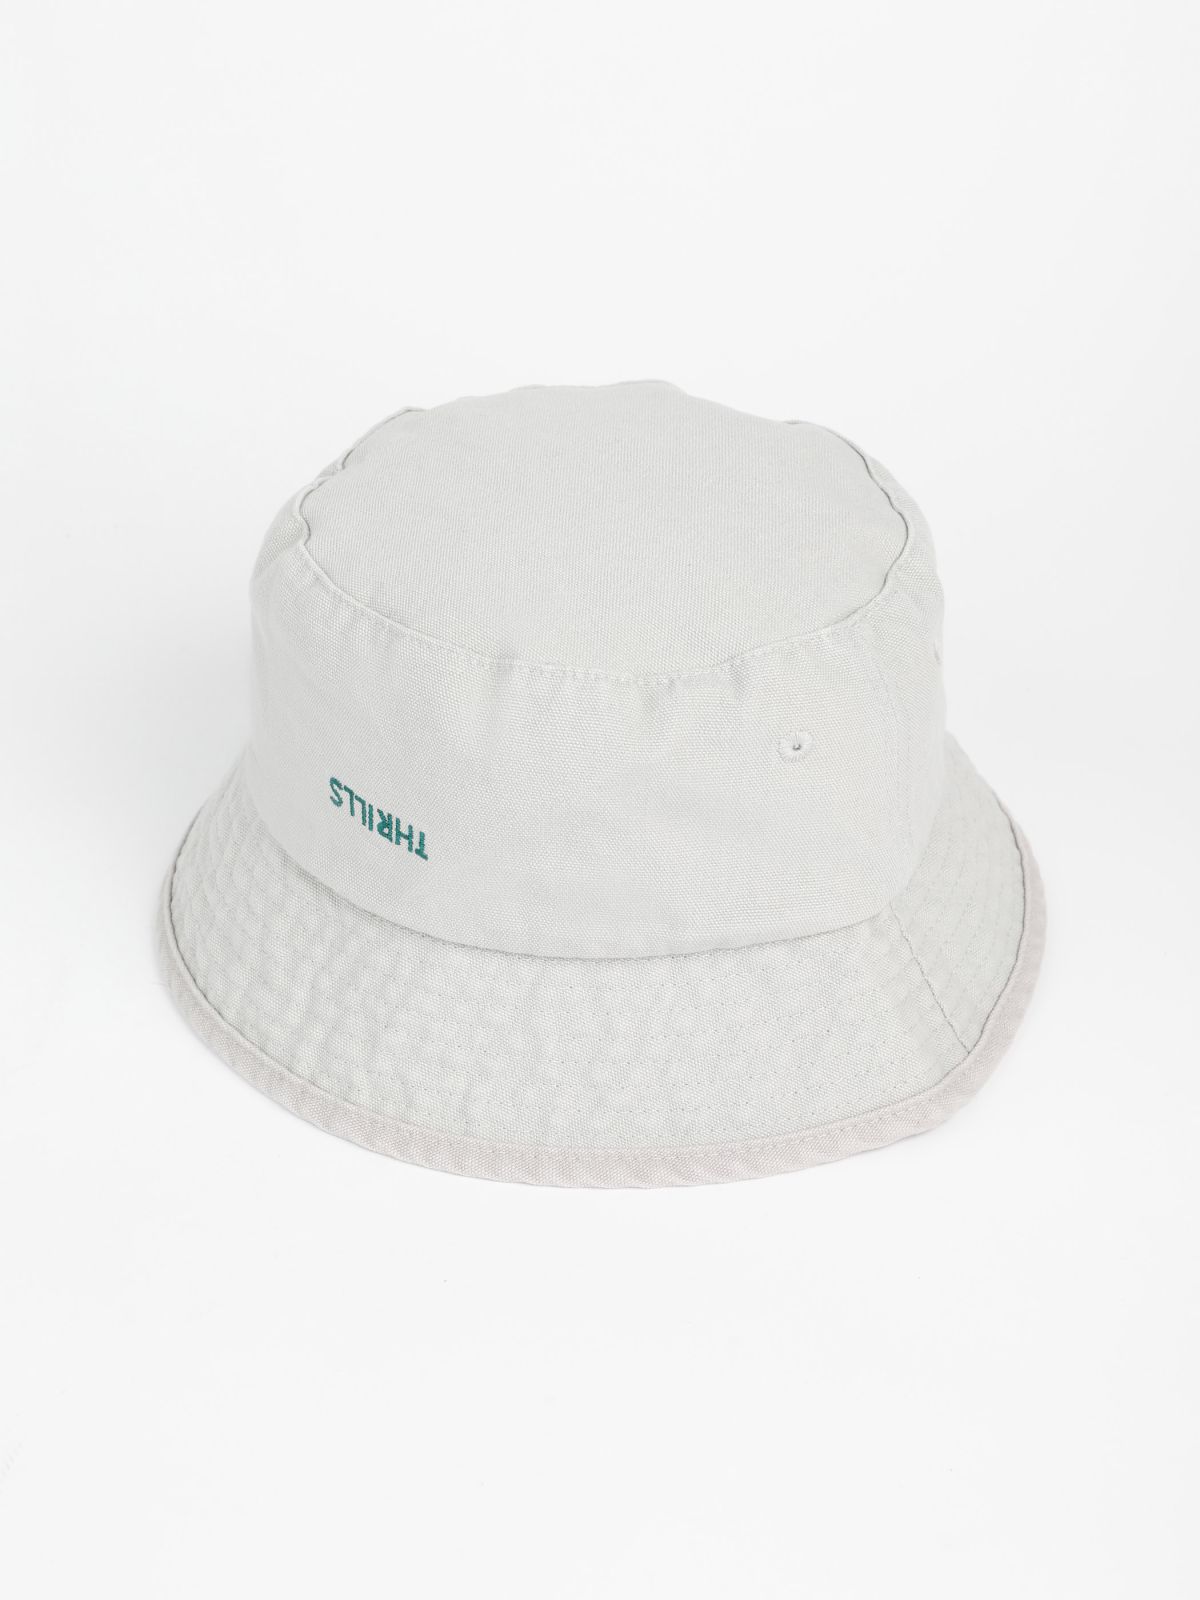  כובע באקט עם רקמת לוגו / גברים של THRILLS